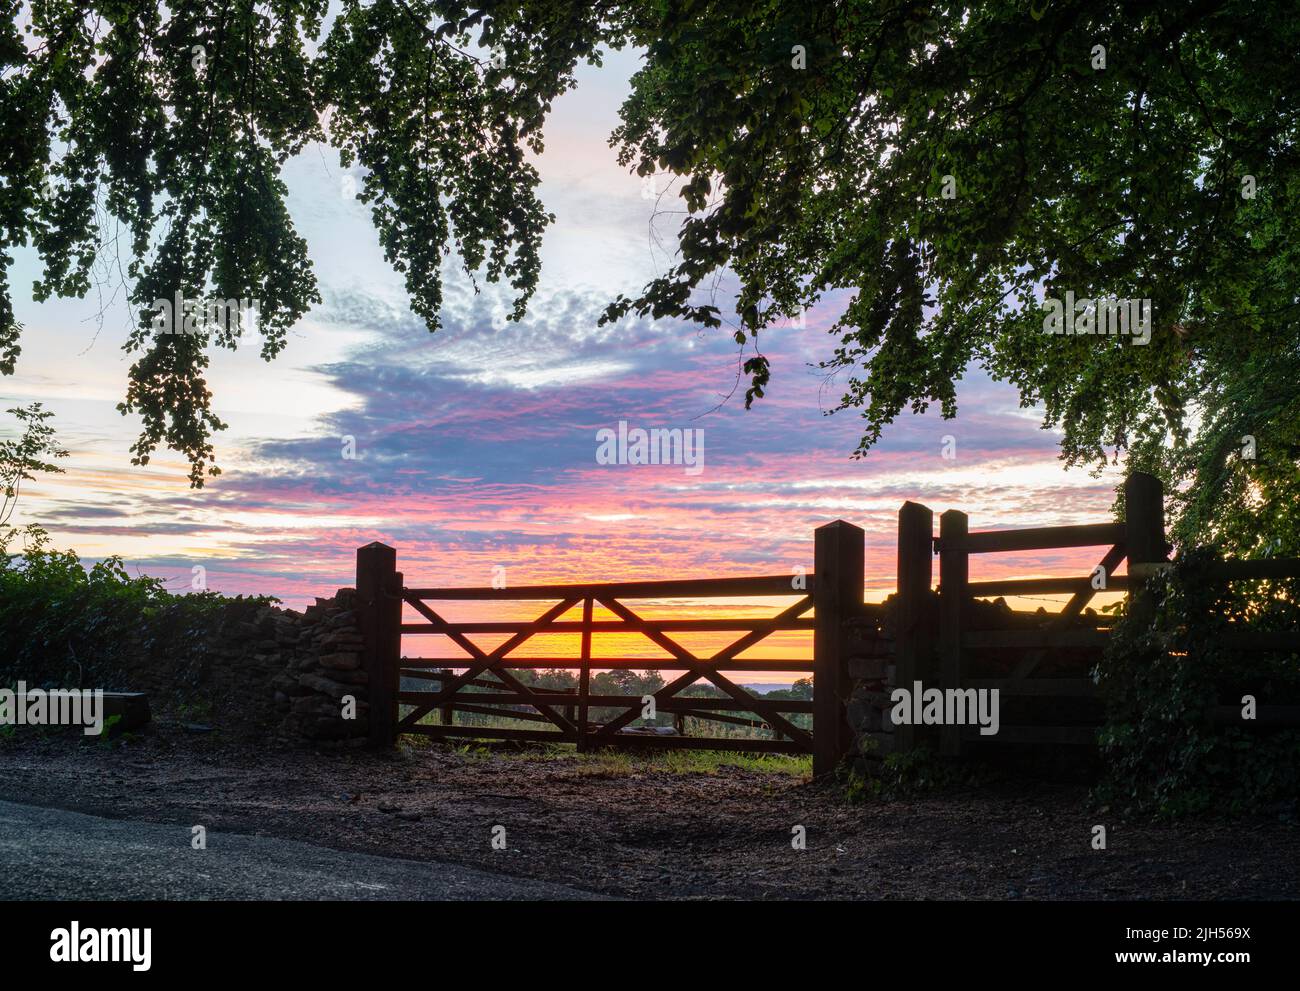 Silhouette puertas de granja al amanecer en una mañana de verano en el campo inglés. Bourton en la colina, Cotswolds, Oxfordshire, Inglaterra Foto de stock